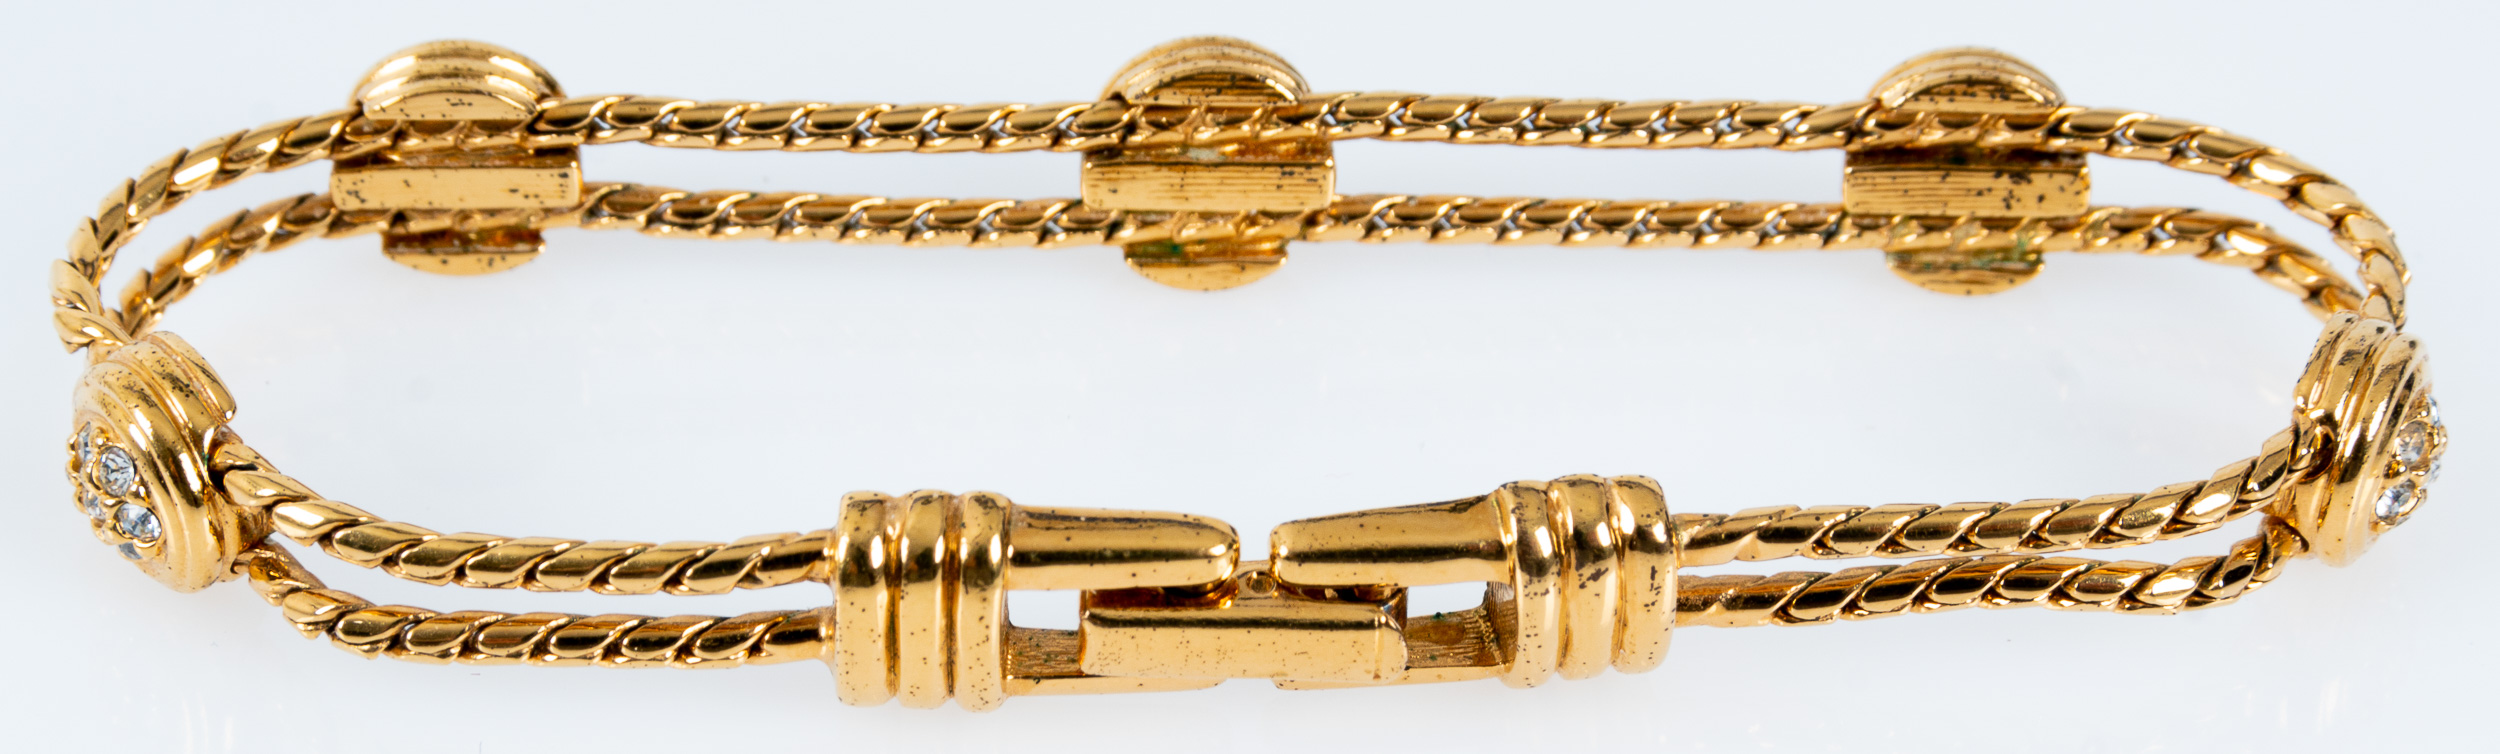 Edles "Swarovski" Armband mit Faltschließe, unedles, vergoldetes Schmuckstück/ Armkette; Länge ca. - Image 4 of 6